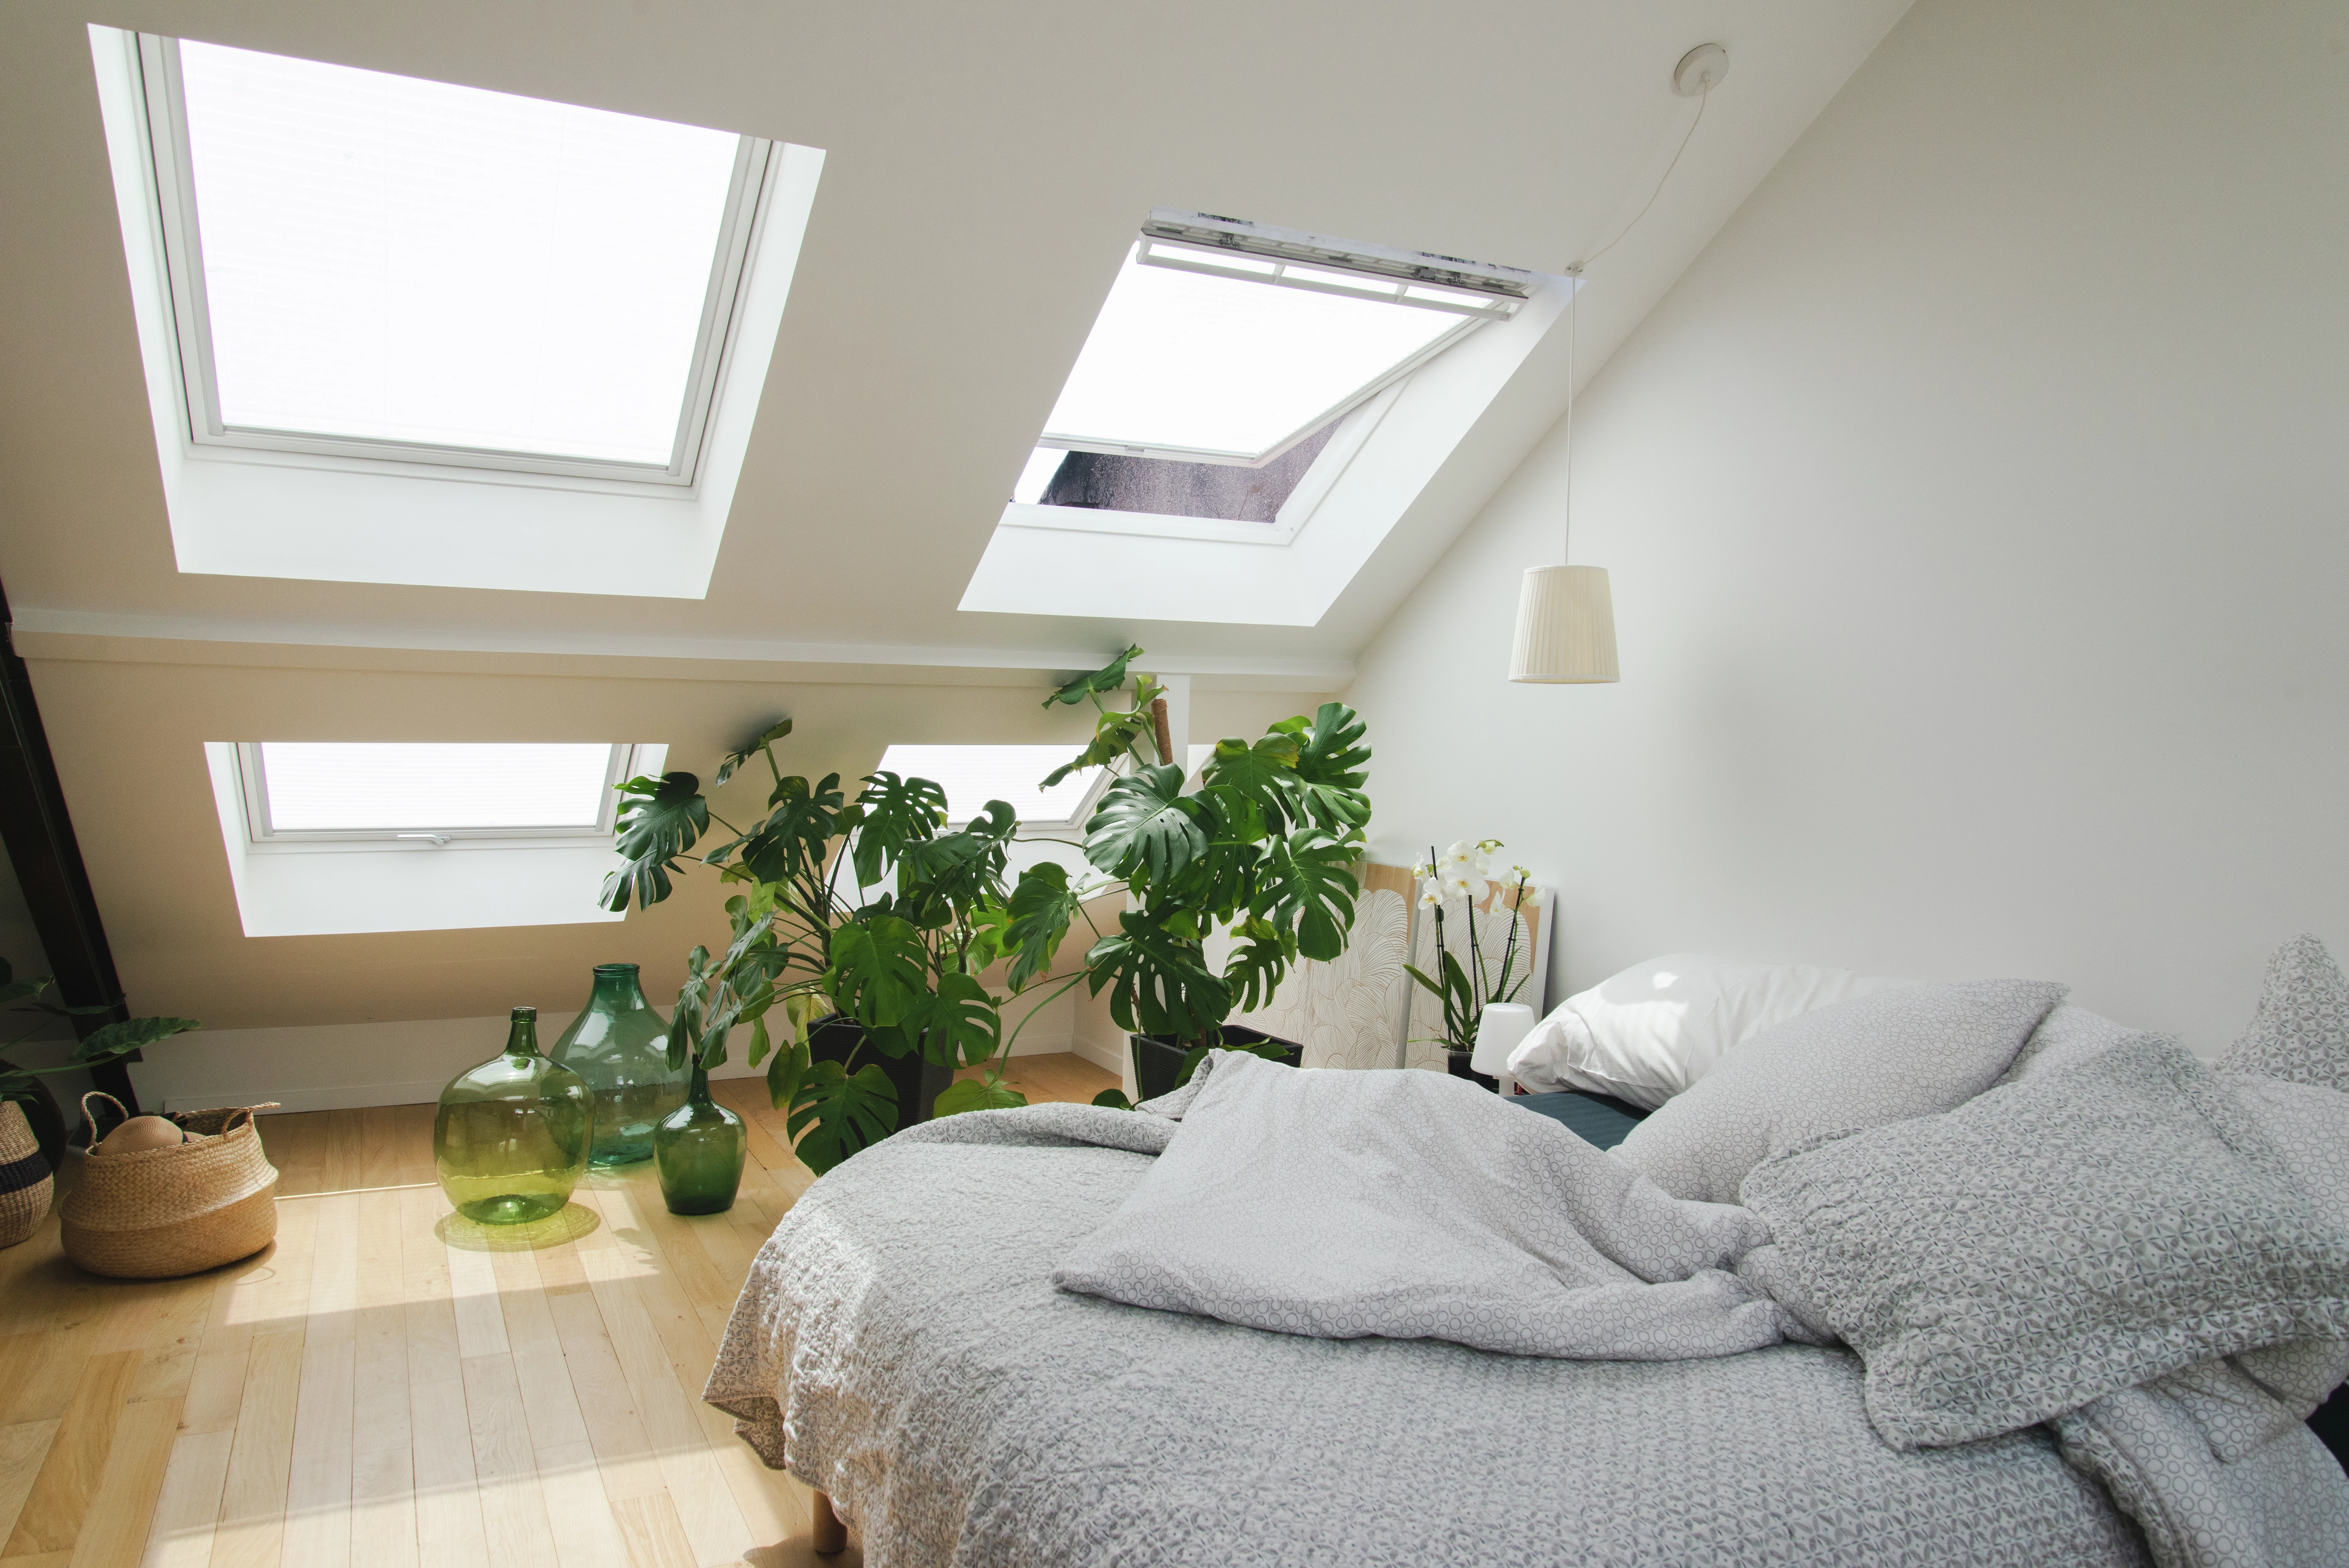 Chambre de comble avec des fenêtres de toit VELUX, des plantes vertes et une literie grise.